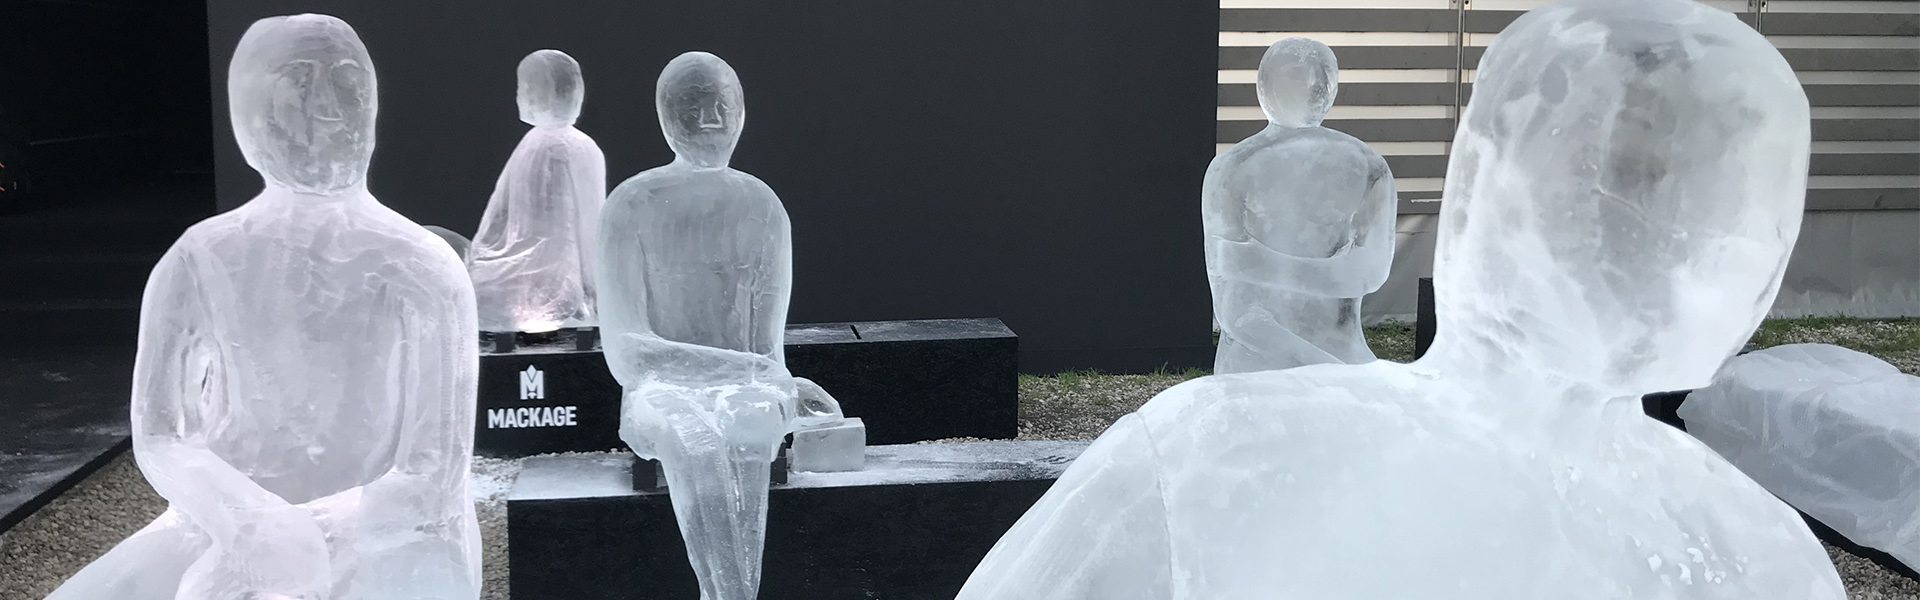 sculture di ghiaccio per eventi aziendali scultoridelghiaccio